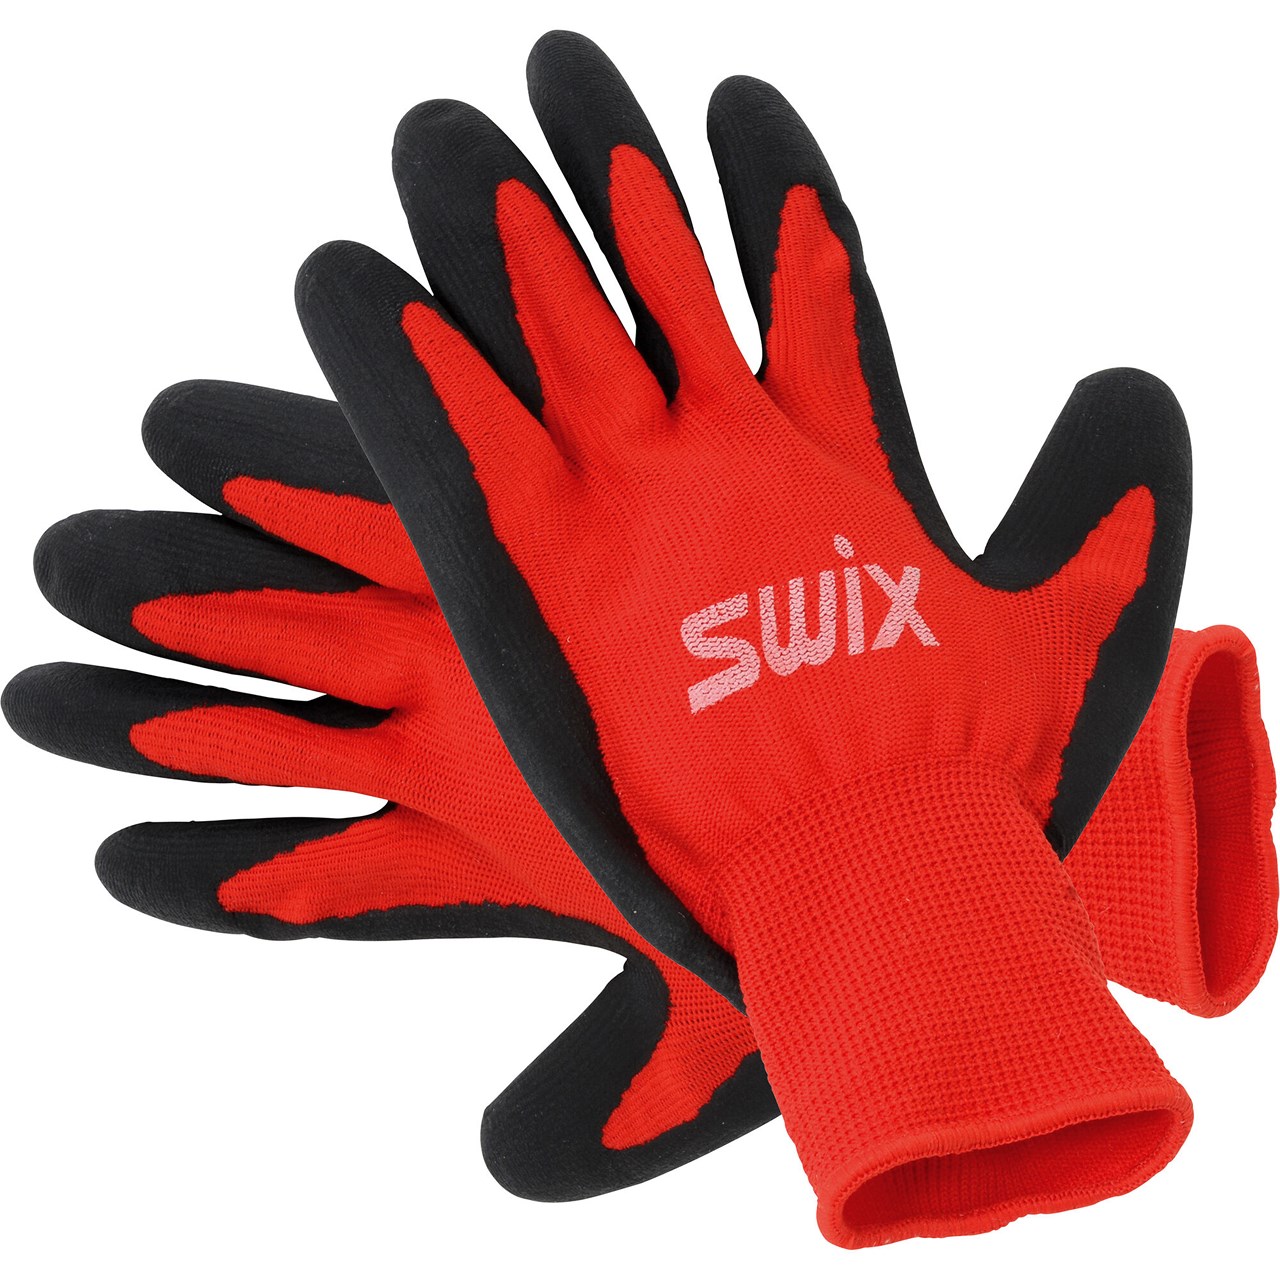 Swix, R196 Tuning Glove